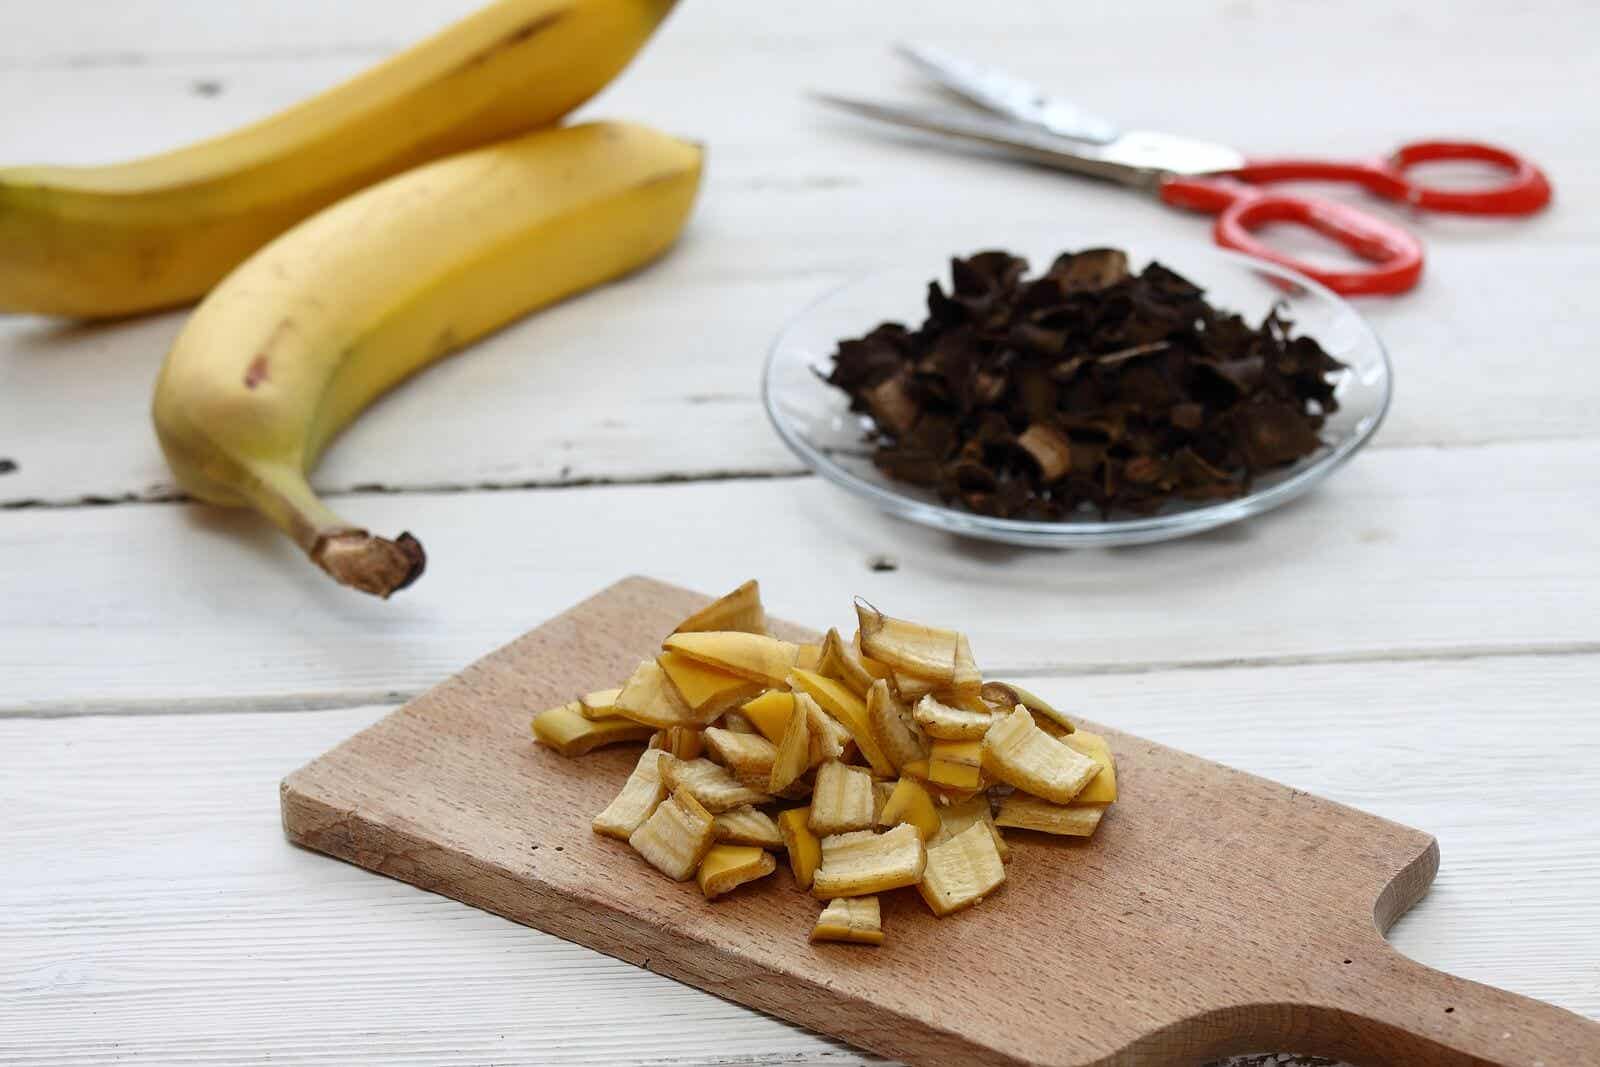 ¿Cómo aprovechar los usos medicinales de la cáscara de banana?